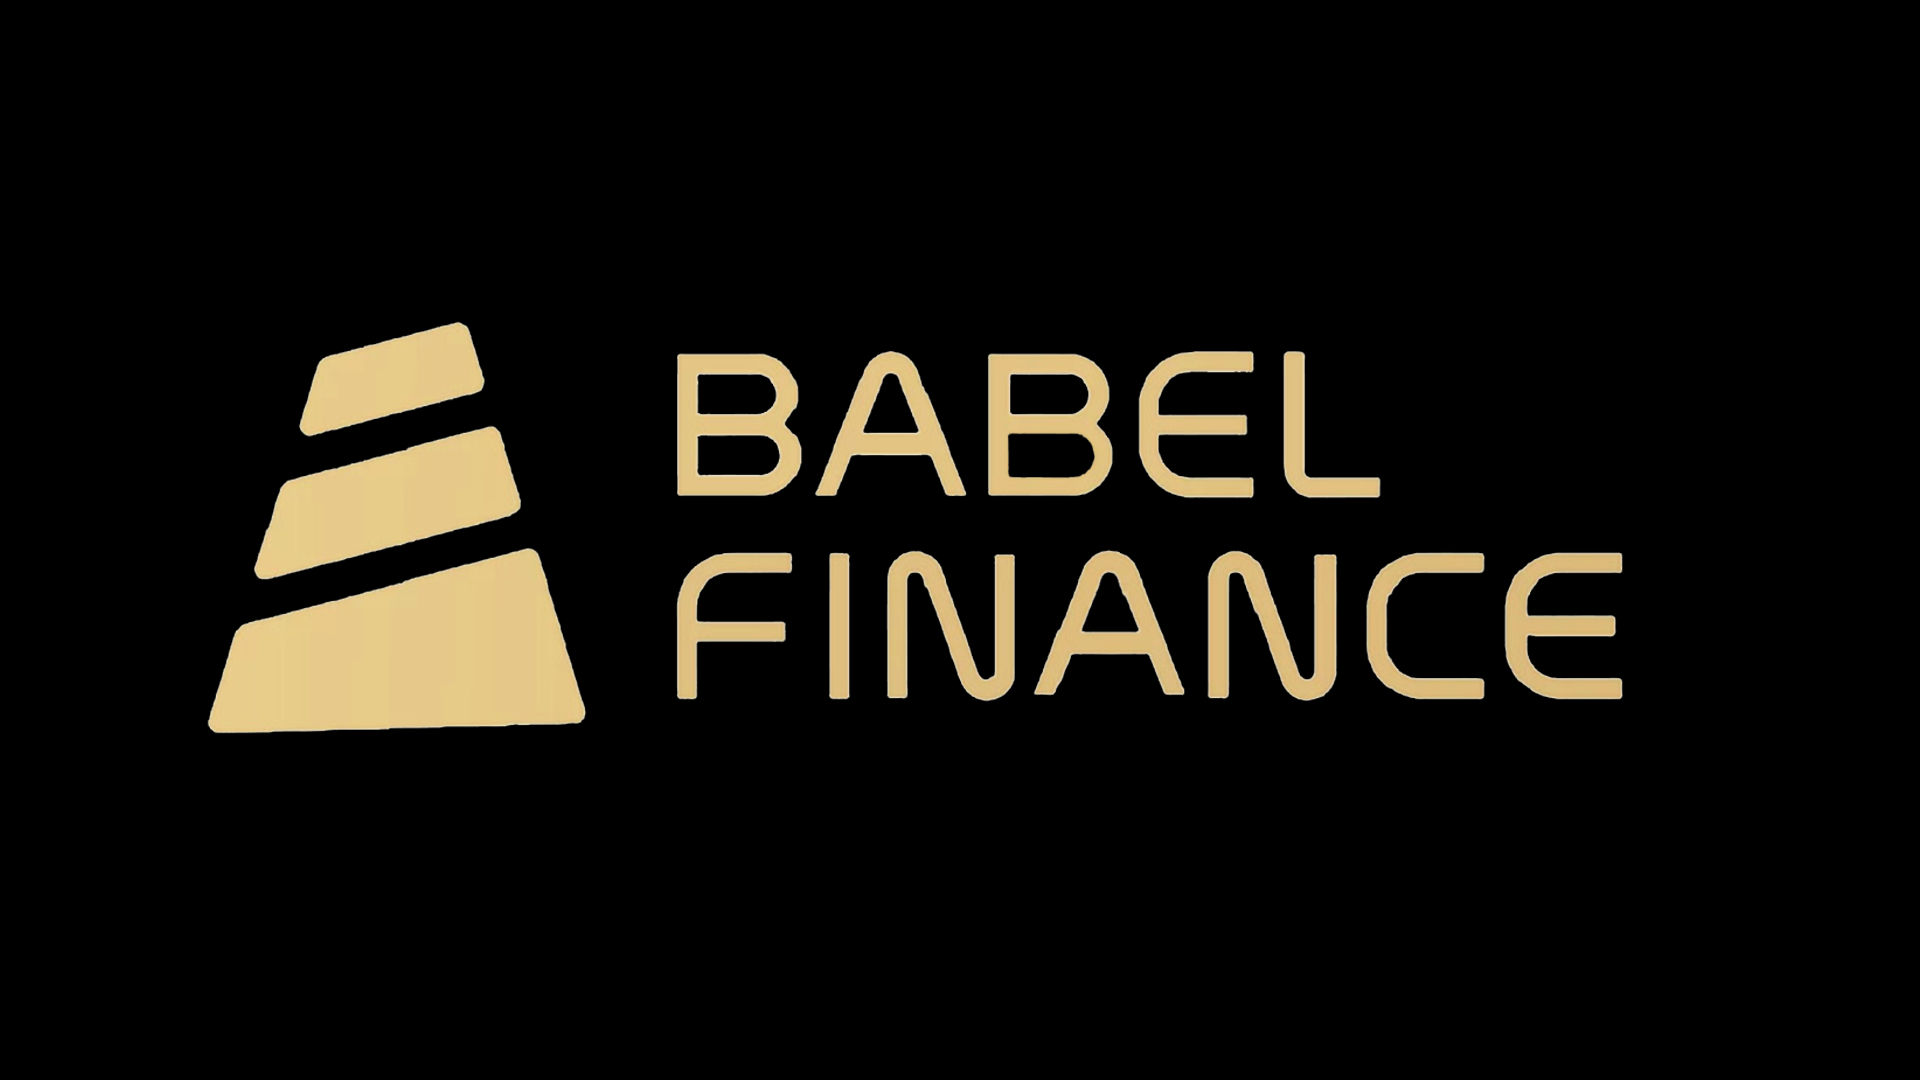 Babel Finance นำเงินลูกค้าไปเทรดจนขาดทุนกว่า 10,000 ล้านบาท ทำให้ต้องหยุดการถอนเงิน